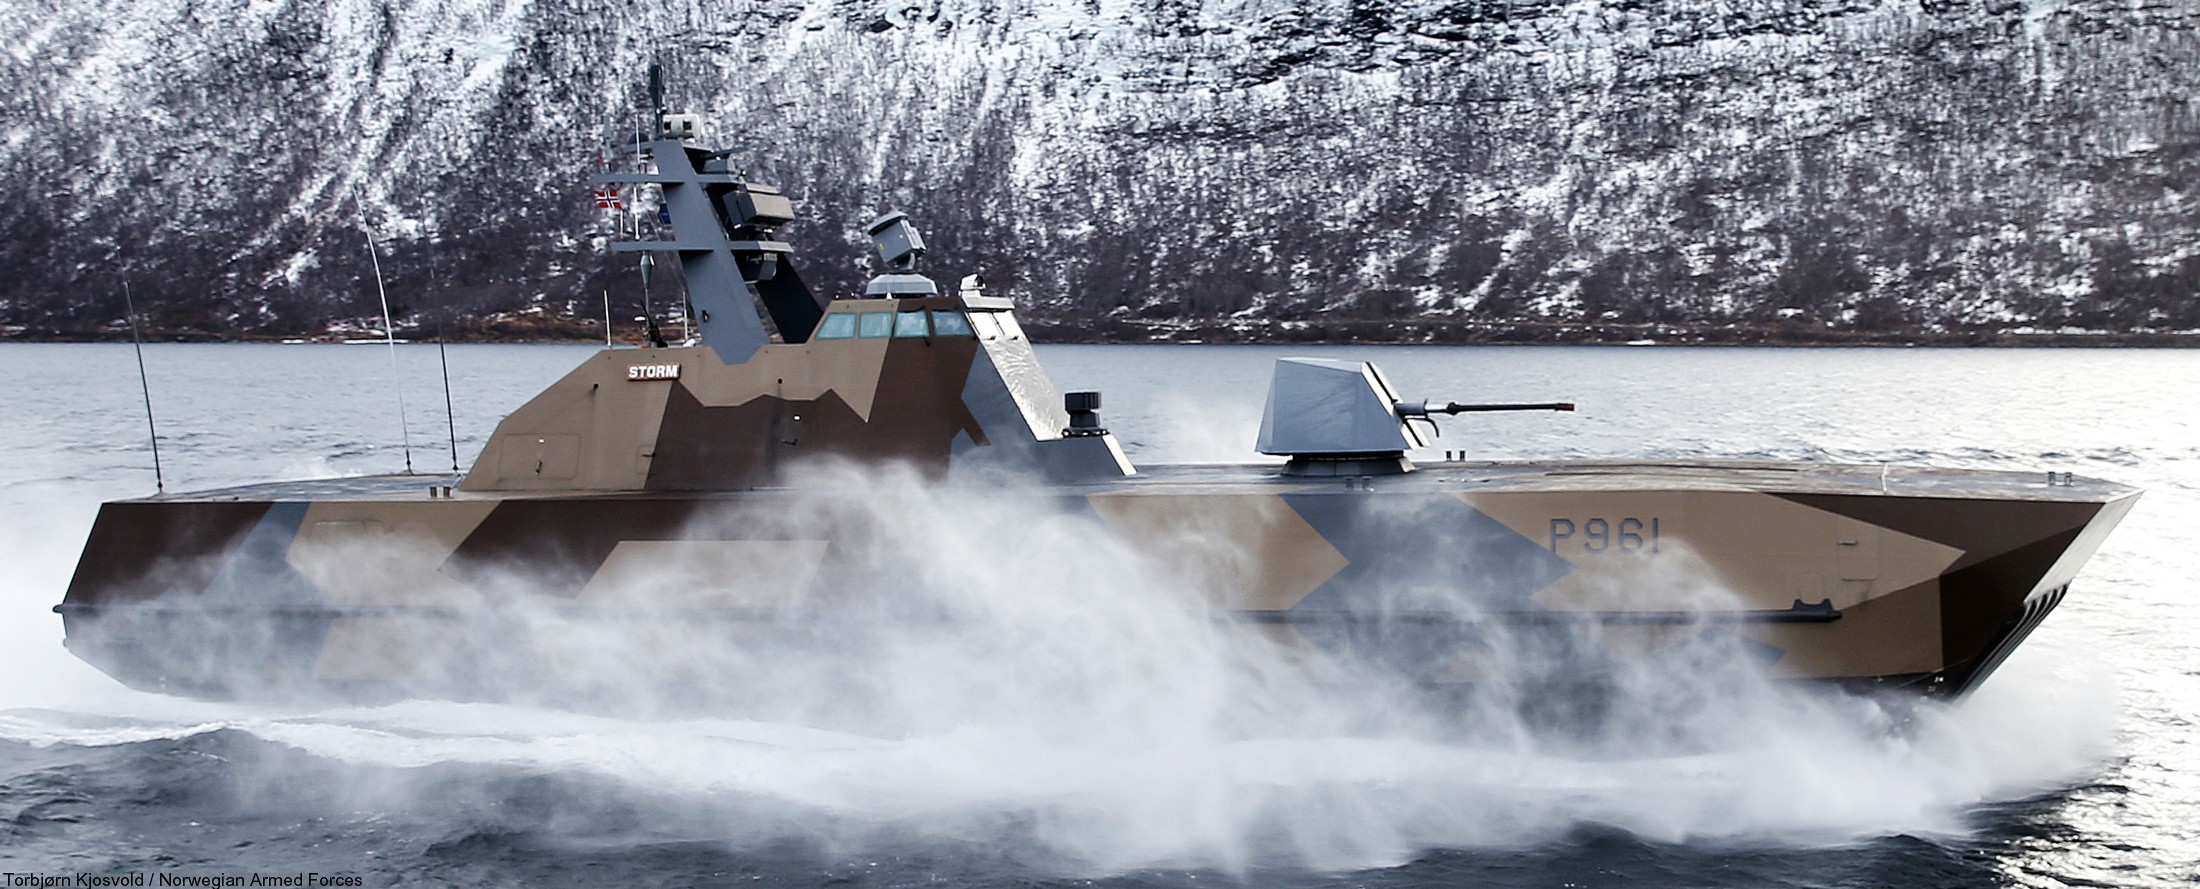 p-961 storm knm hnoms skjold class corvette royal norwegian navy sjoforsvaret 10